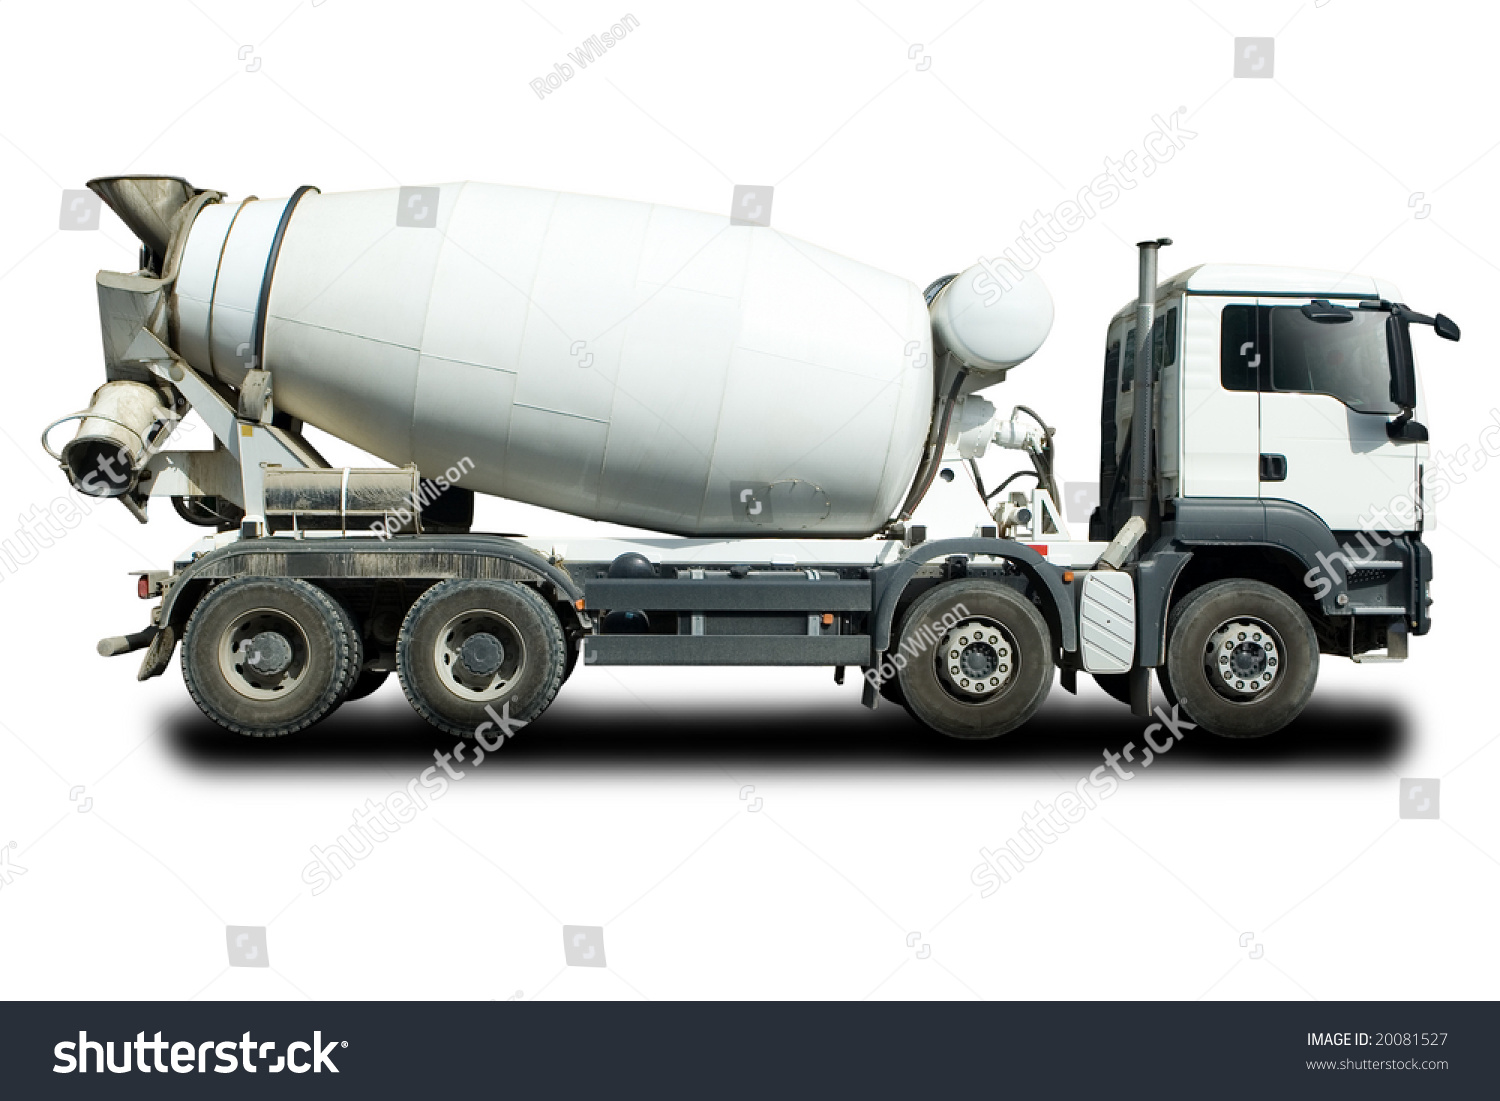 Cement Mixer Truck Stock Photo 20081527 : Shutterstock